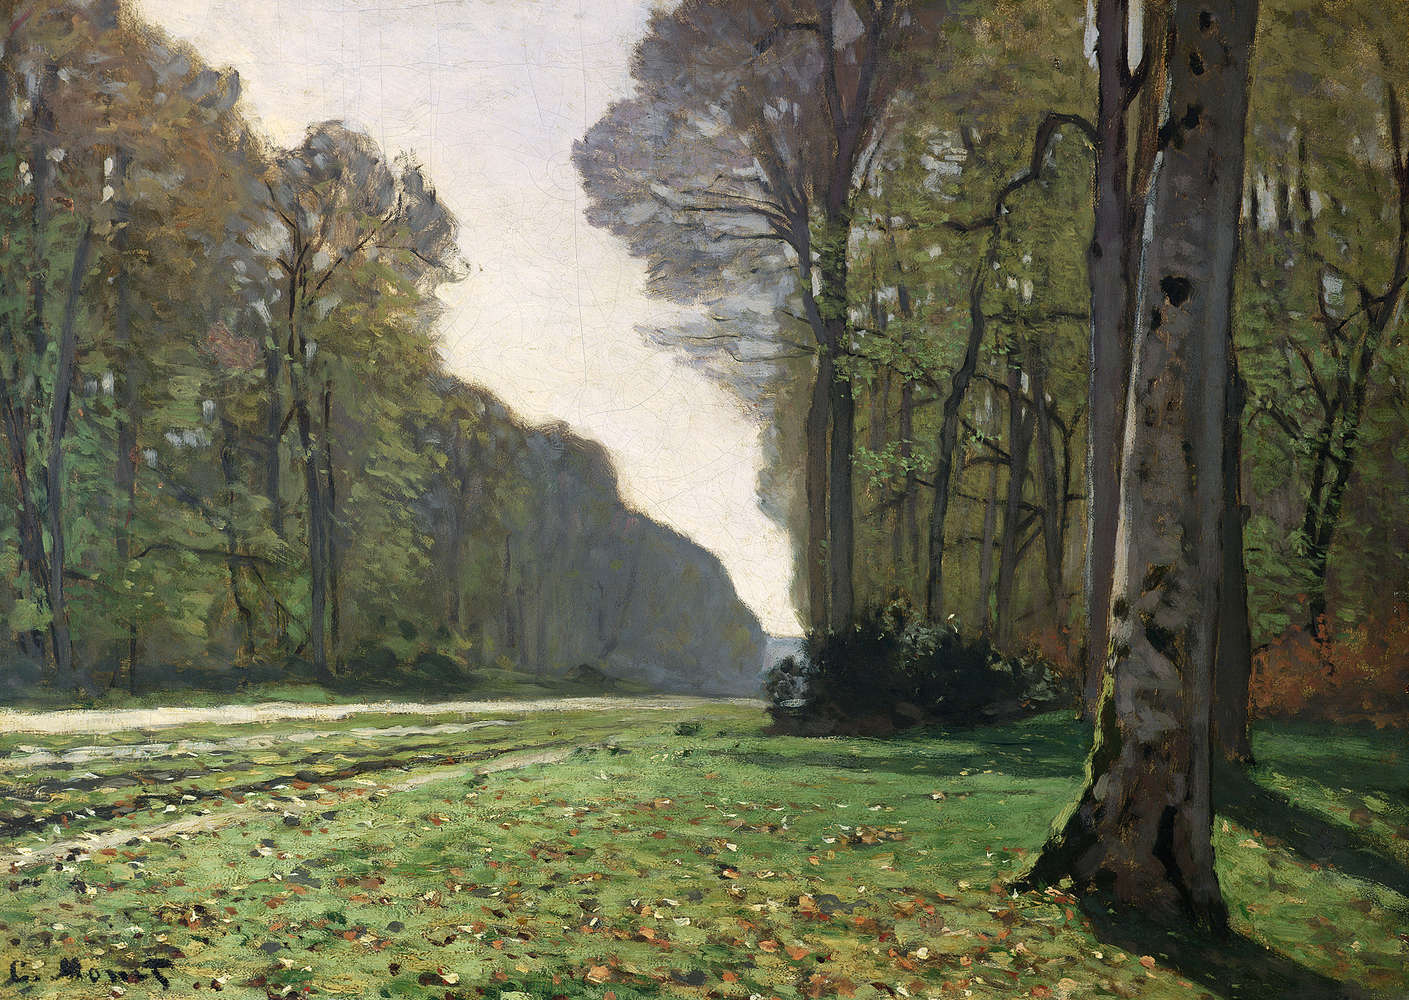             Papier peint panoramique "Le chemin du BasBreauFontainebleau" de Claude Monet
        